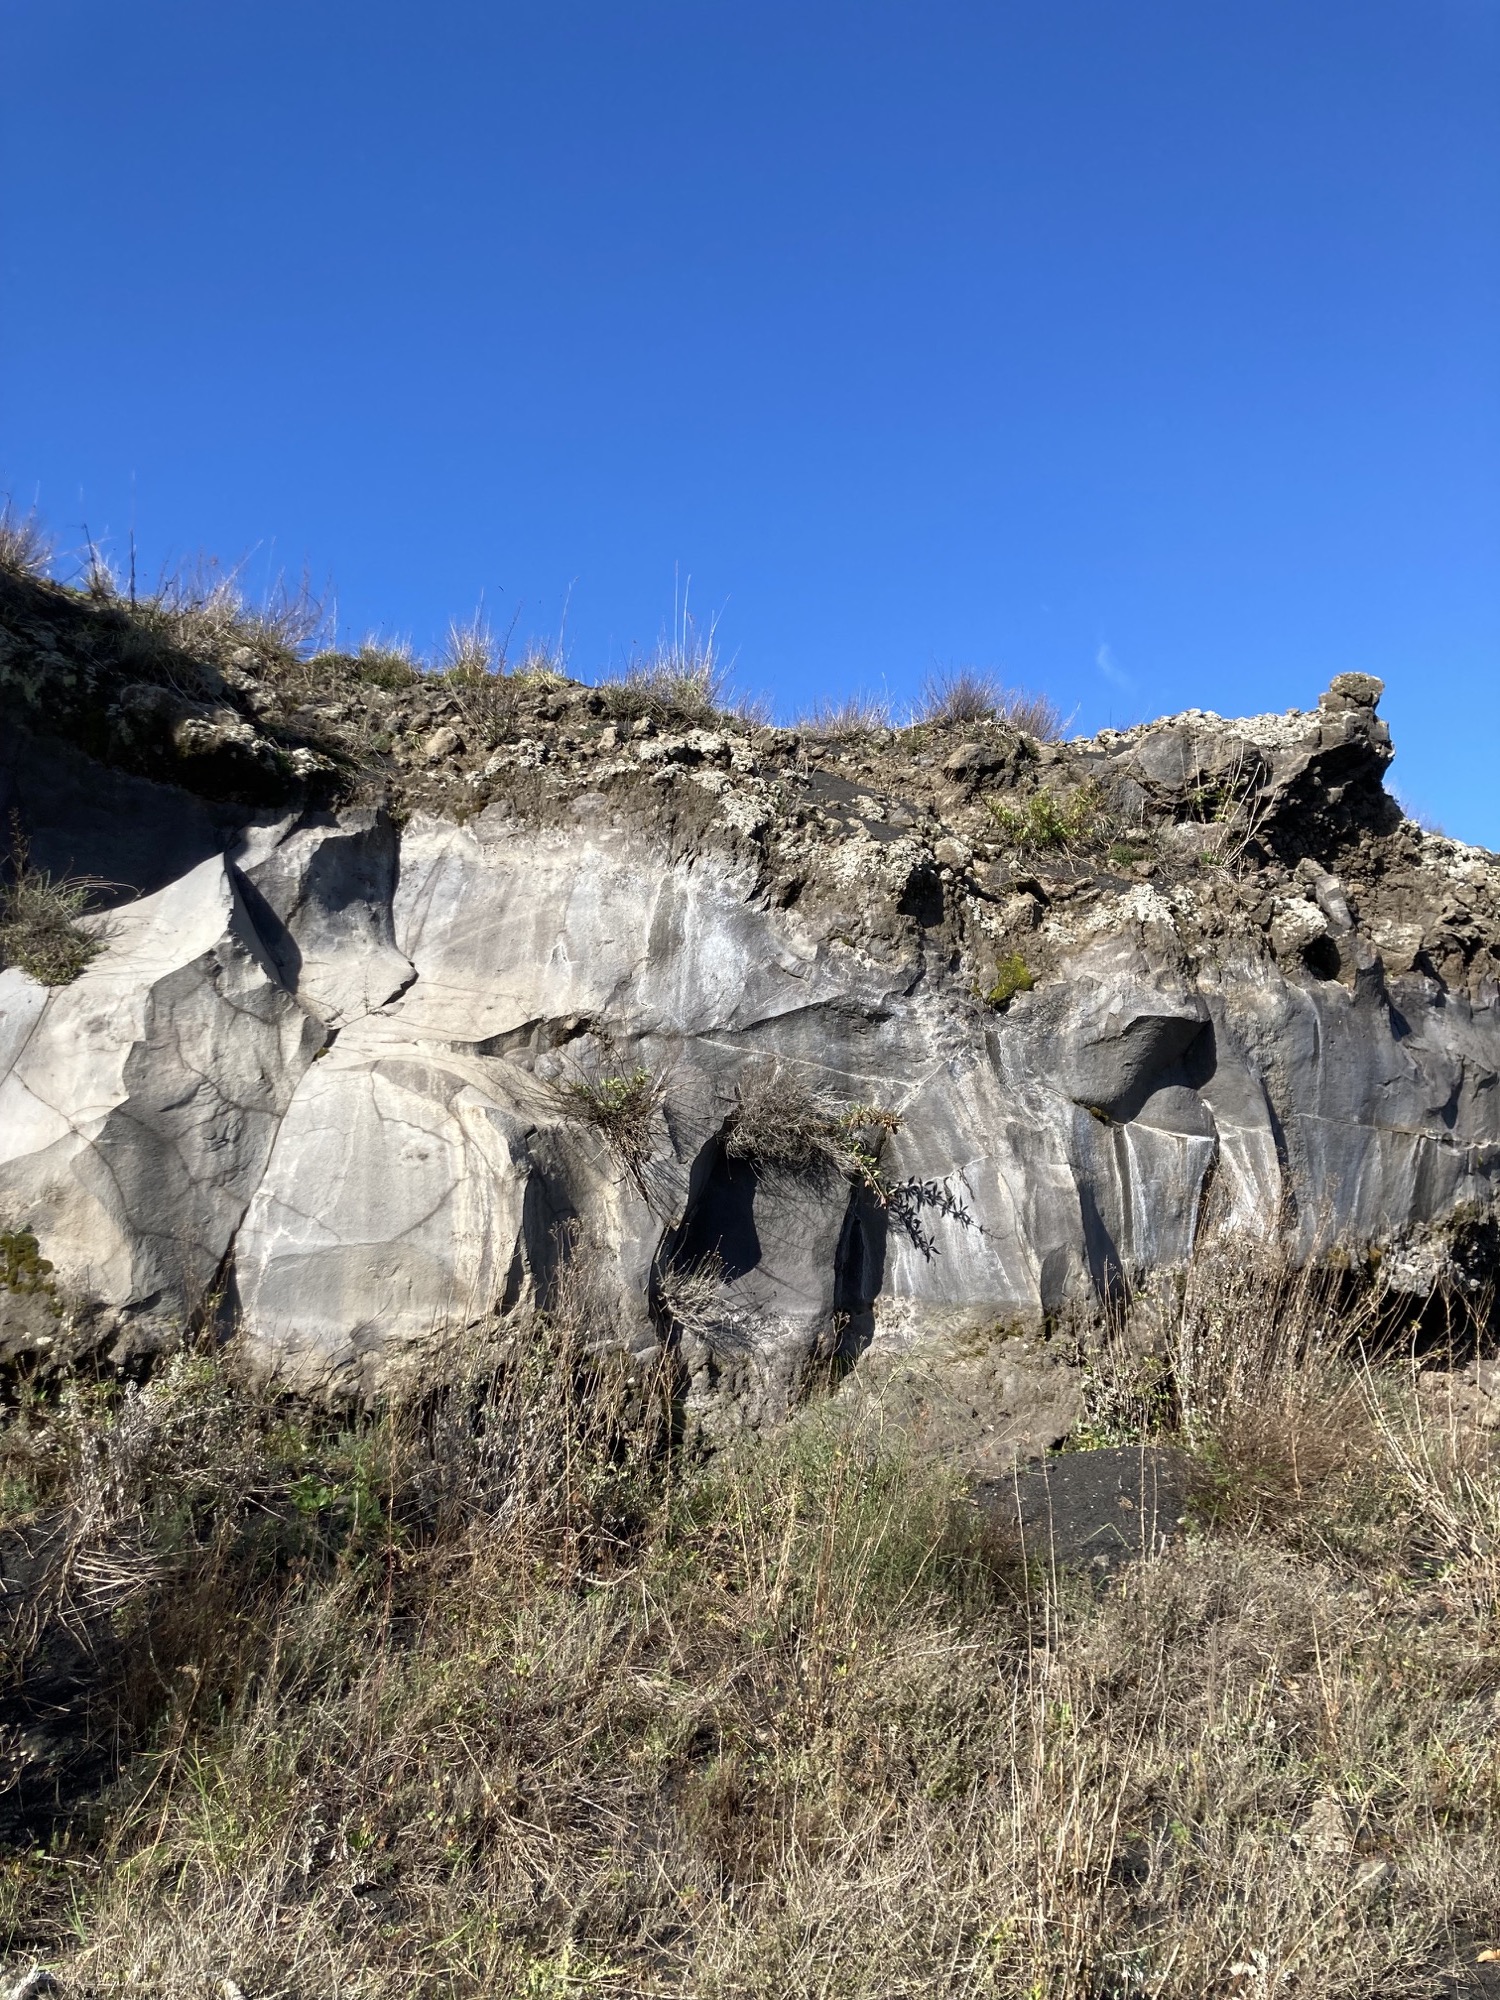 vulkanisches Gestein aus erkalteter Lava (Basalt), bewachsen von wildem Thymian und anderen Gräsern